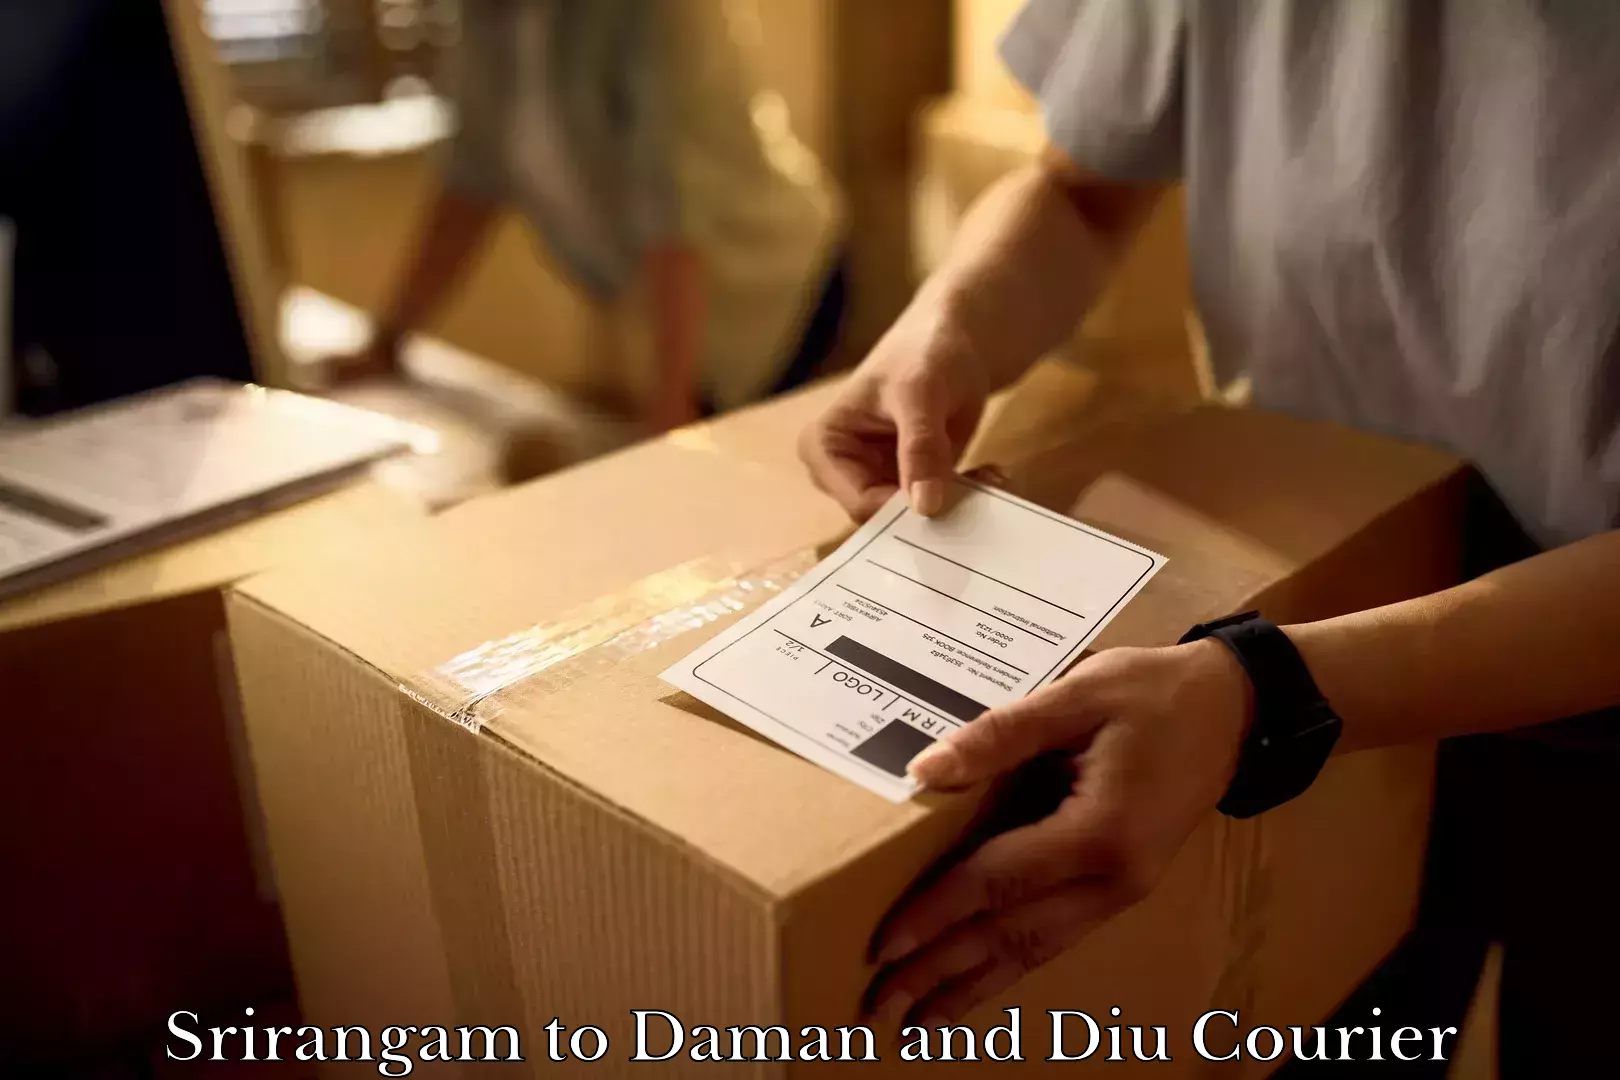 Furniture transport experts Srirangam to Diu